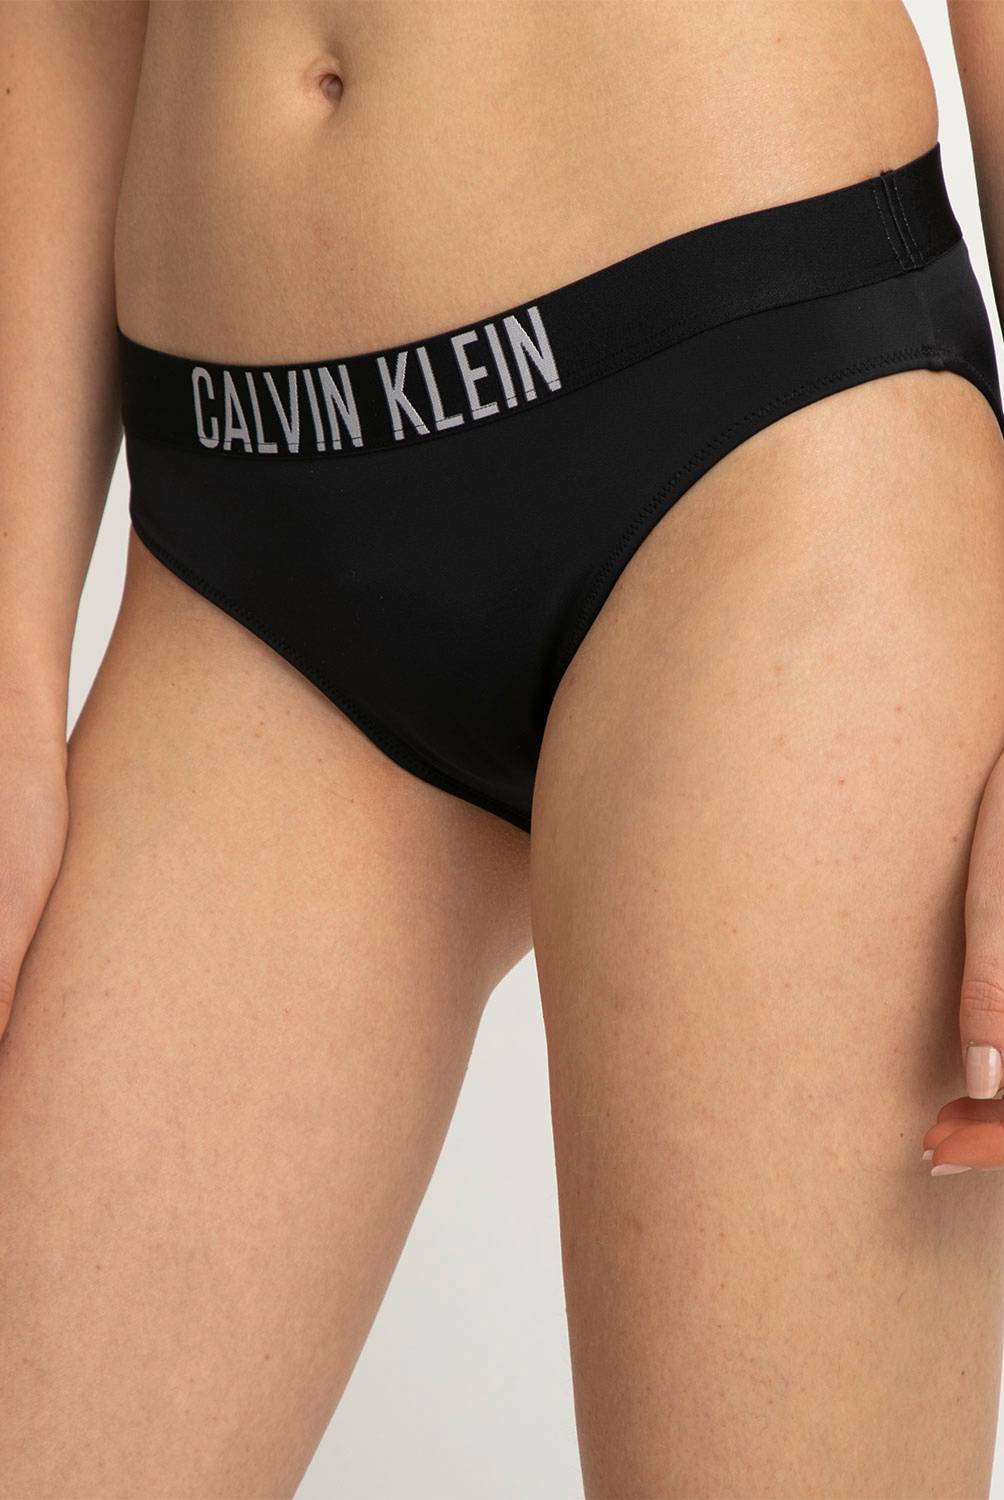 CALVIN KLEIN - Calvin Klein Bikini Bottom Mujer